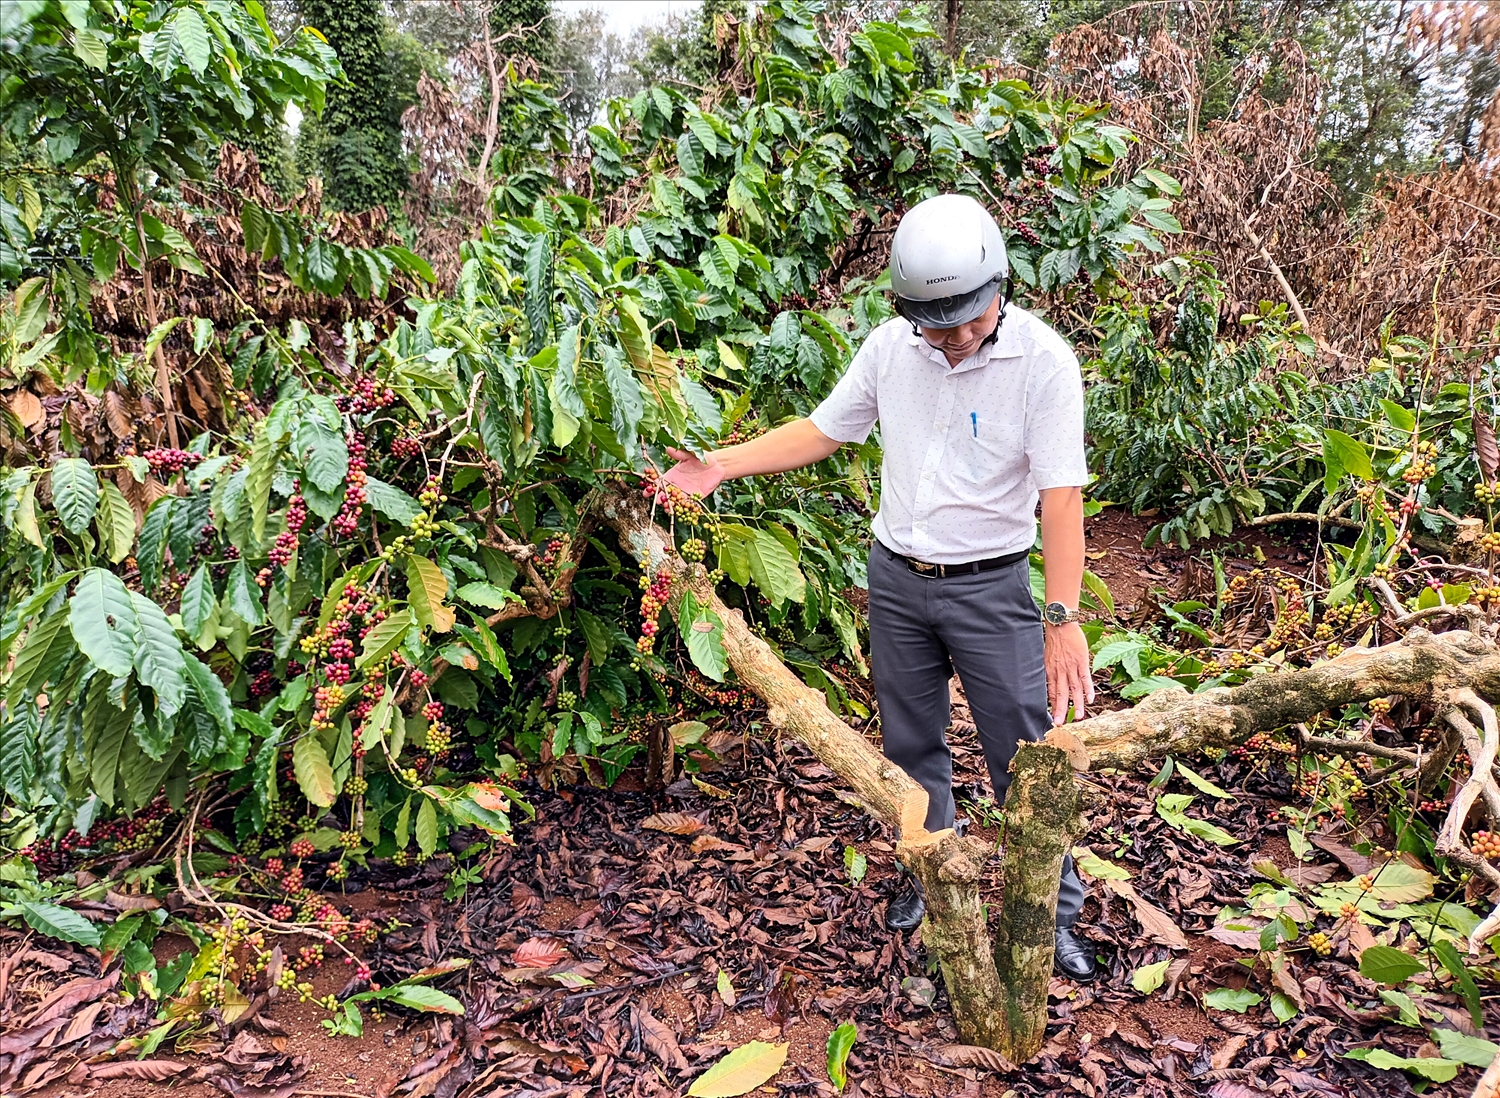 Hàng loạt cây cà phê đang trong vụ thu hoạch bị chặt phá ngổn ngang. (Ảnh chụp ngày 13/11/2022)